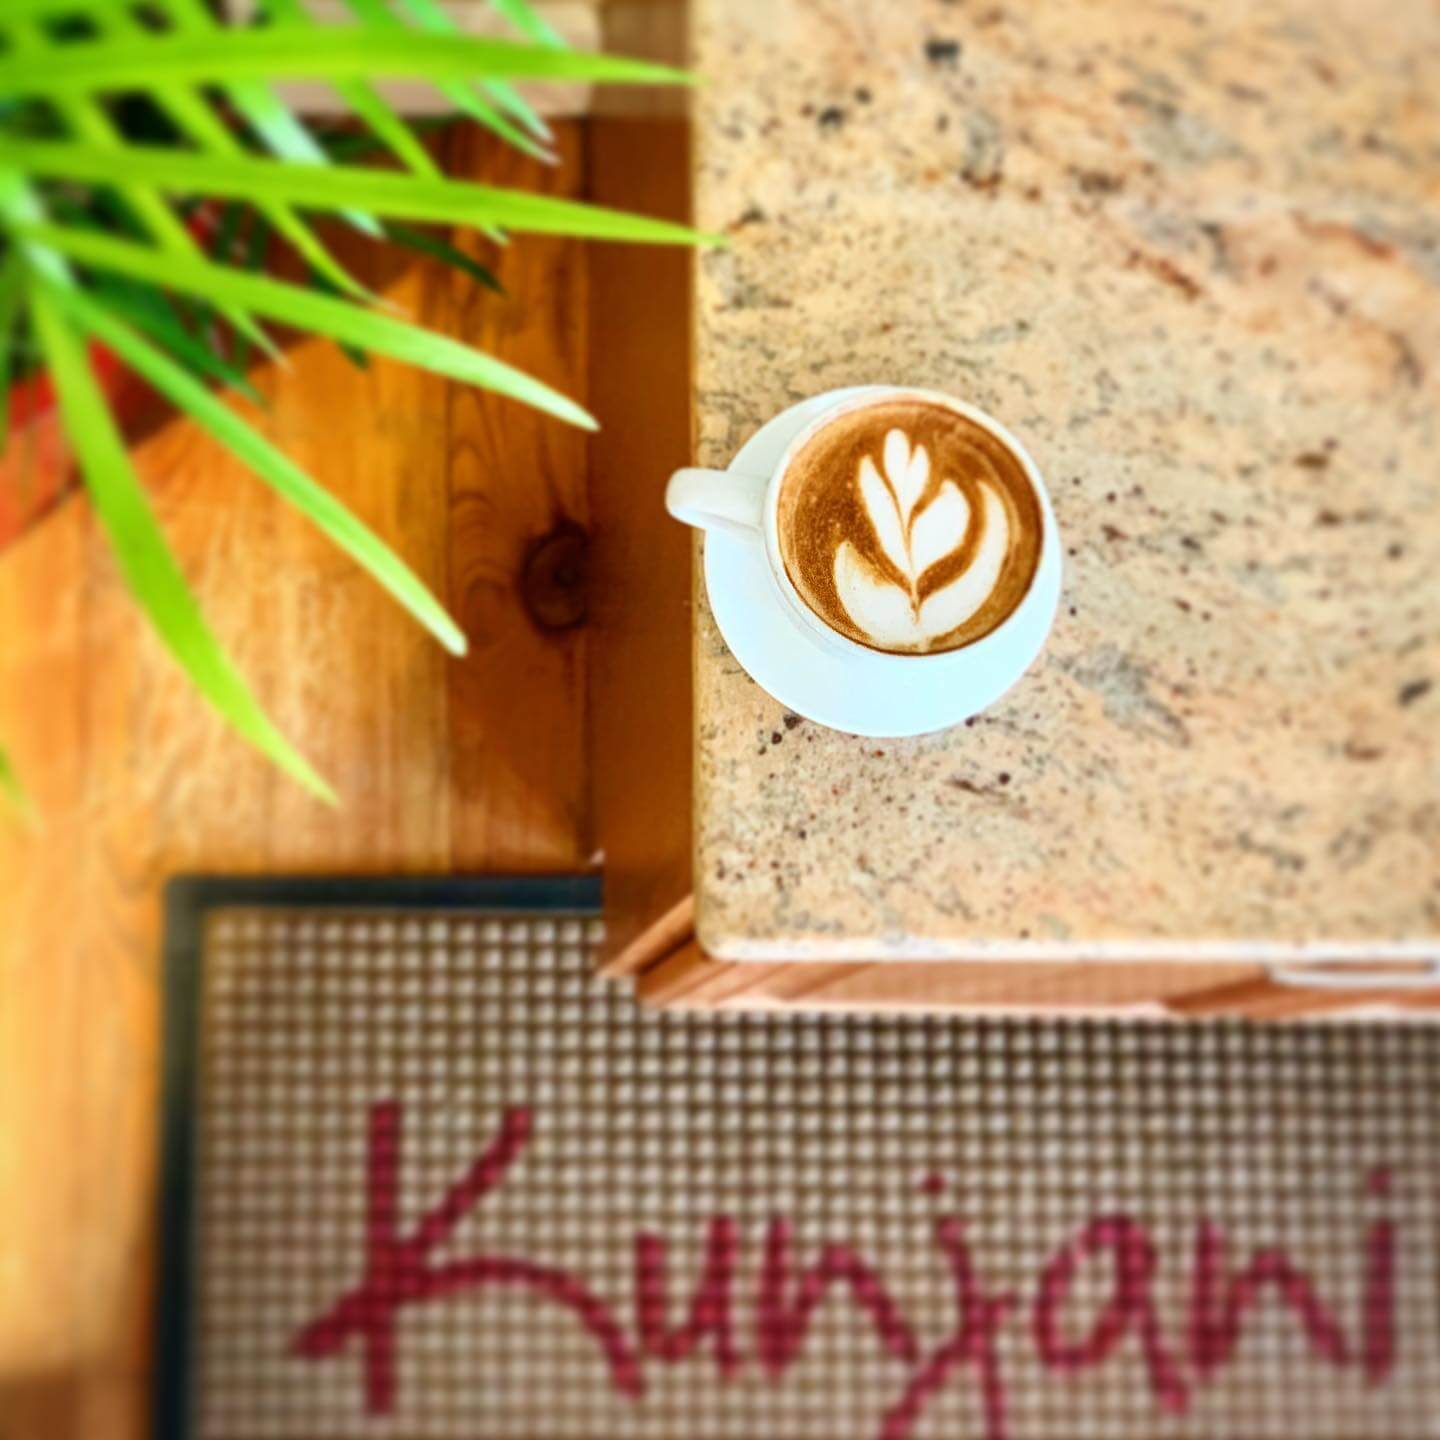 Coffee at Kunjani Craft Coffee in Naples Florida.